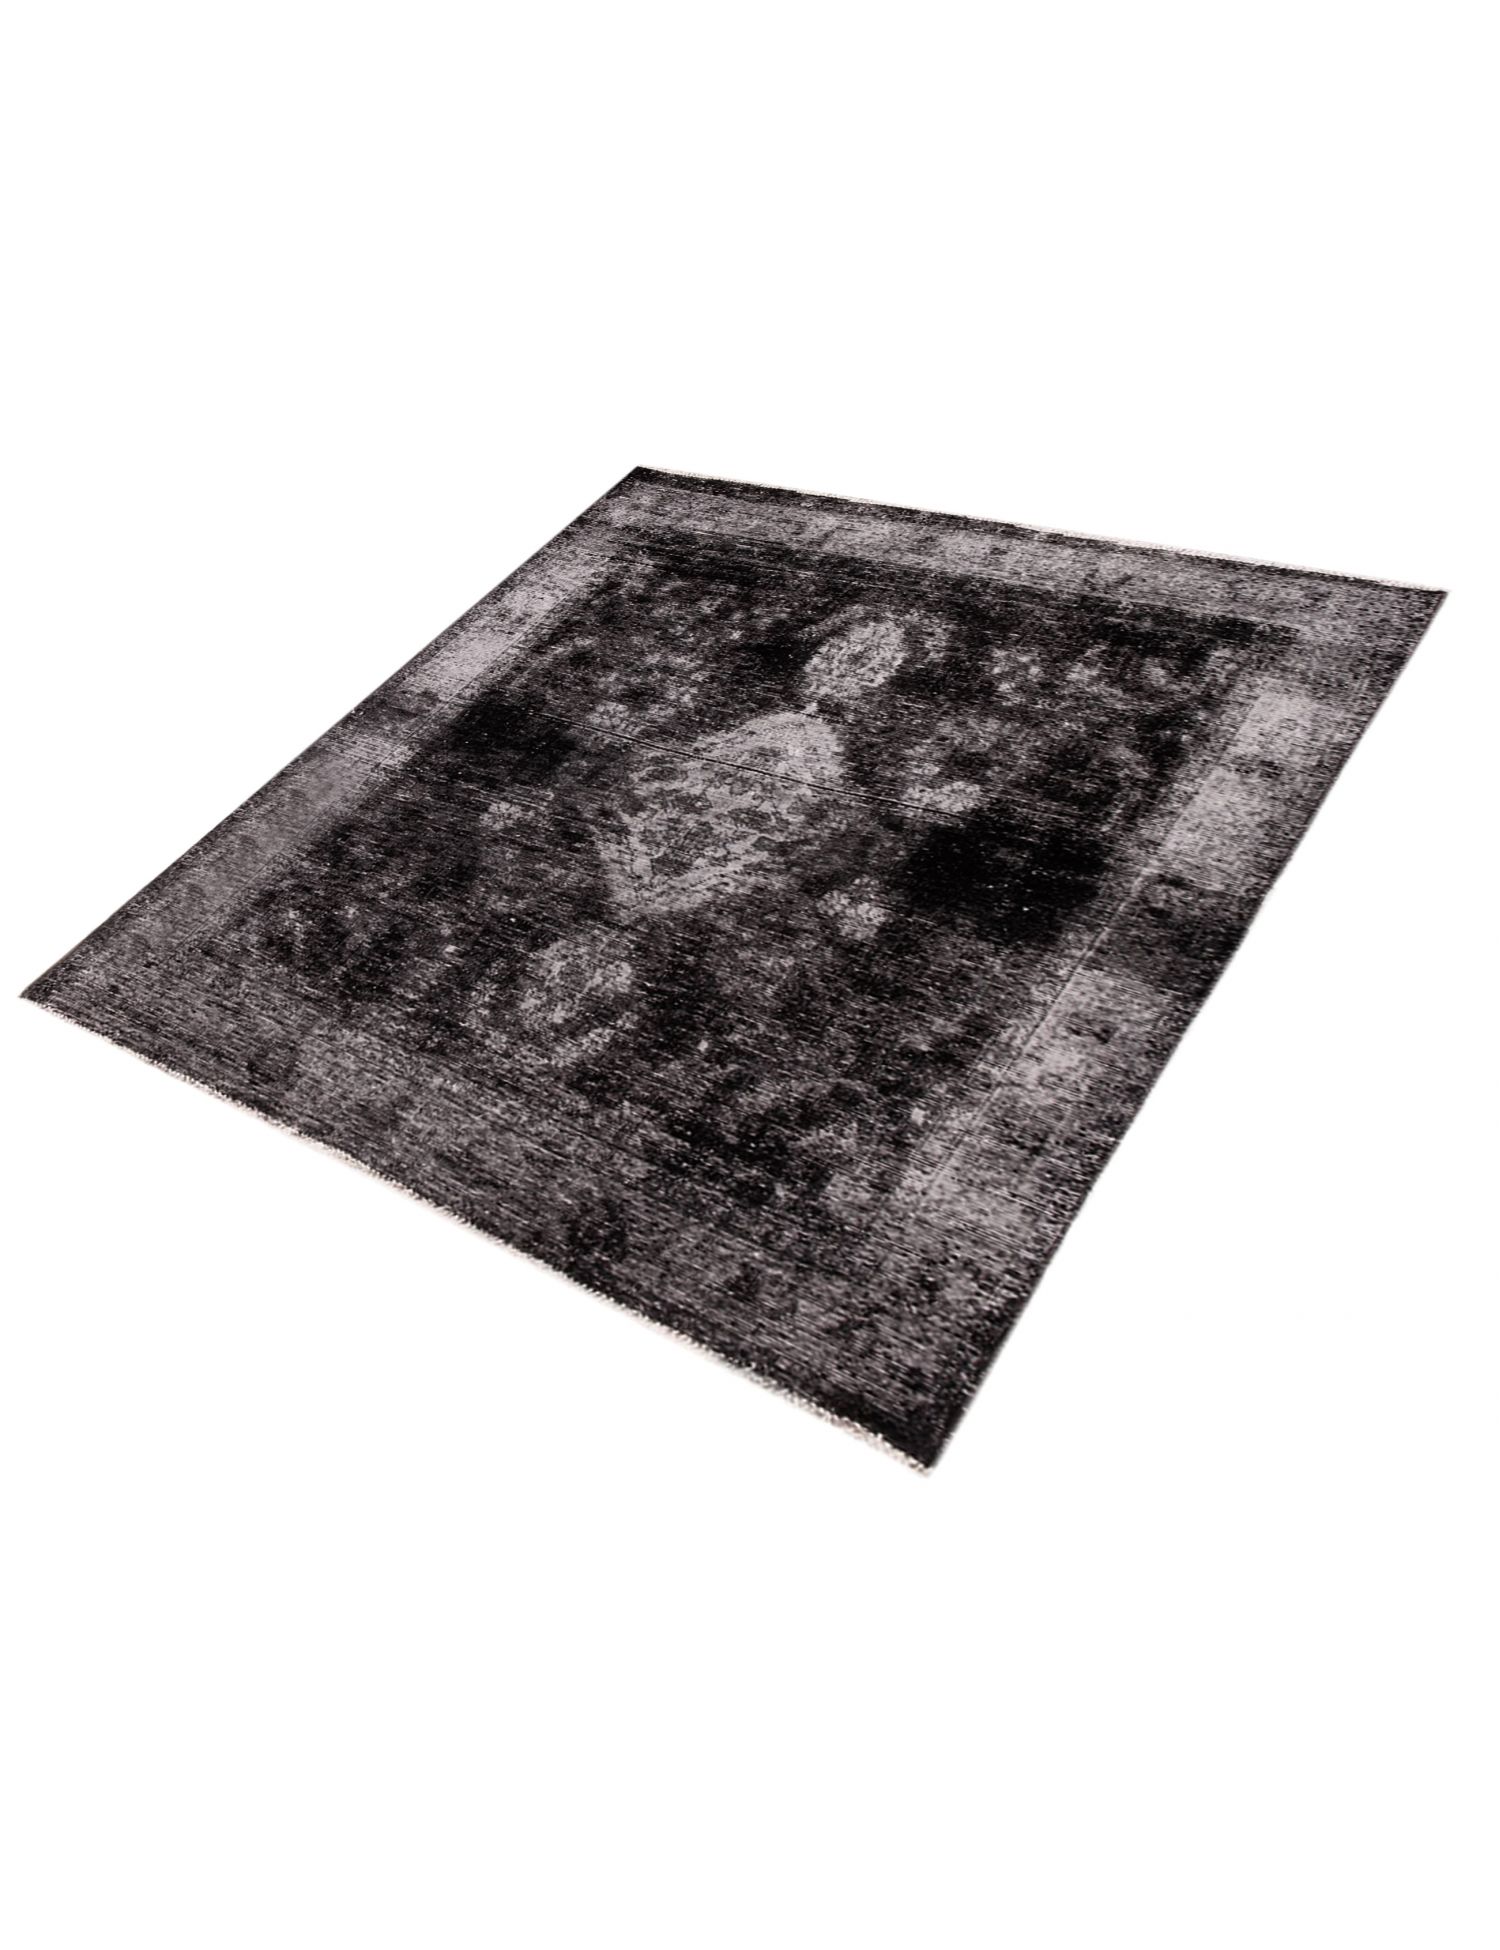 Persian Vintage Carpet  black <br/>175 x 150 cm